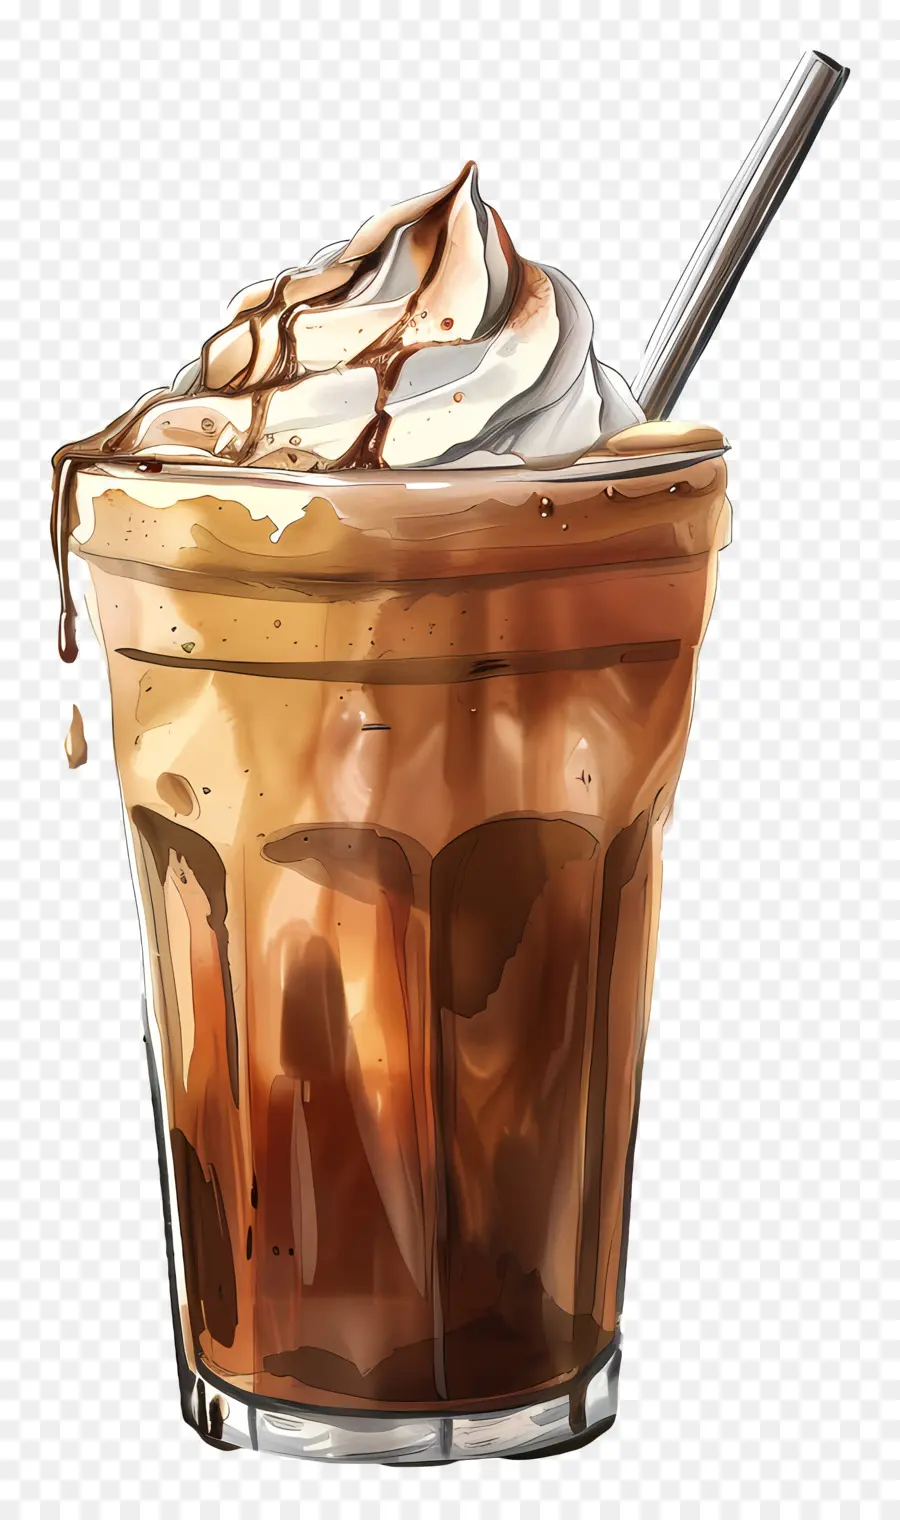 Kalter Kaffee - Hohes Glas Schokoladenmilchshake mit Schlagsahne